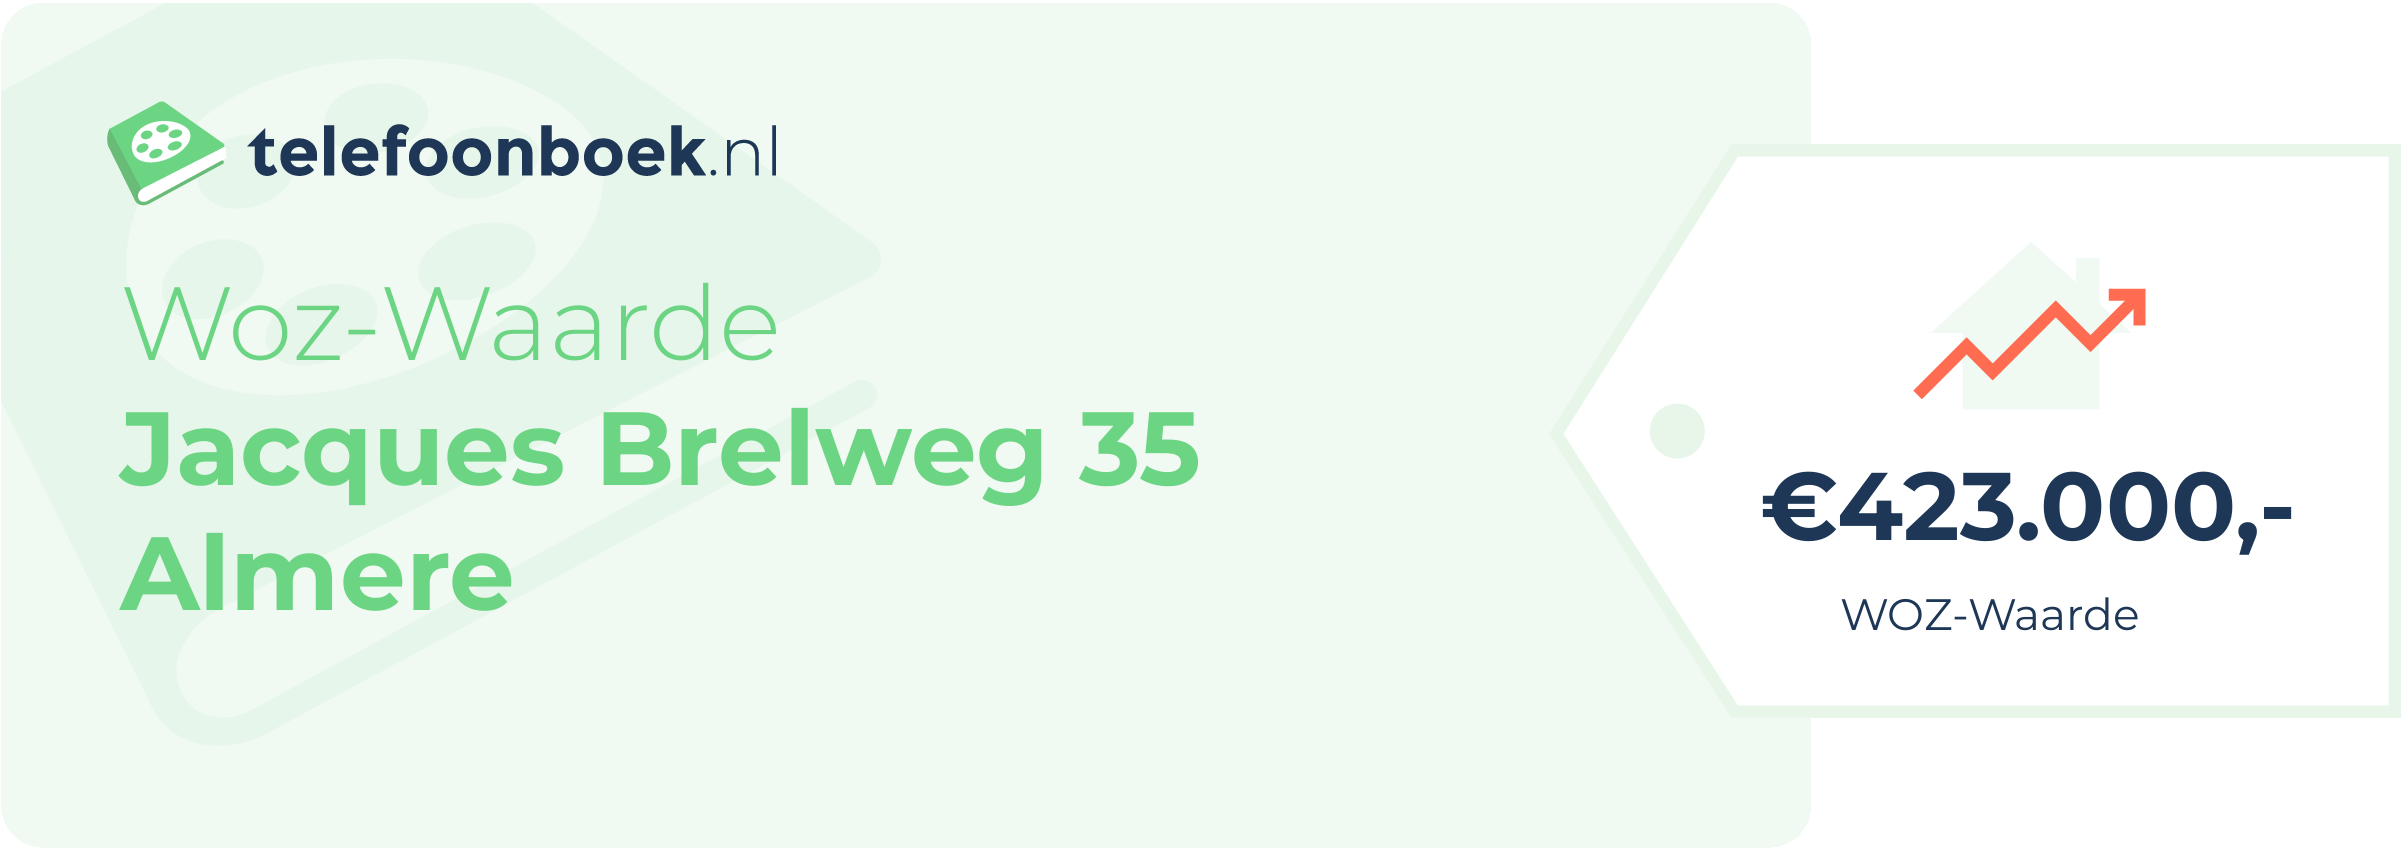 WOZ-waarde Jacques Brelweg 35 Almere